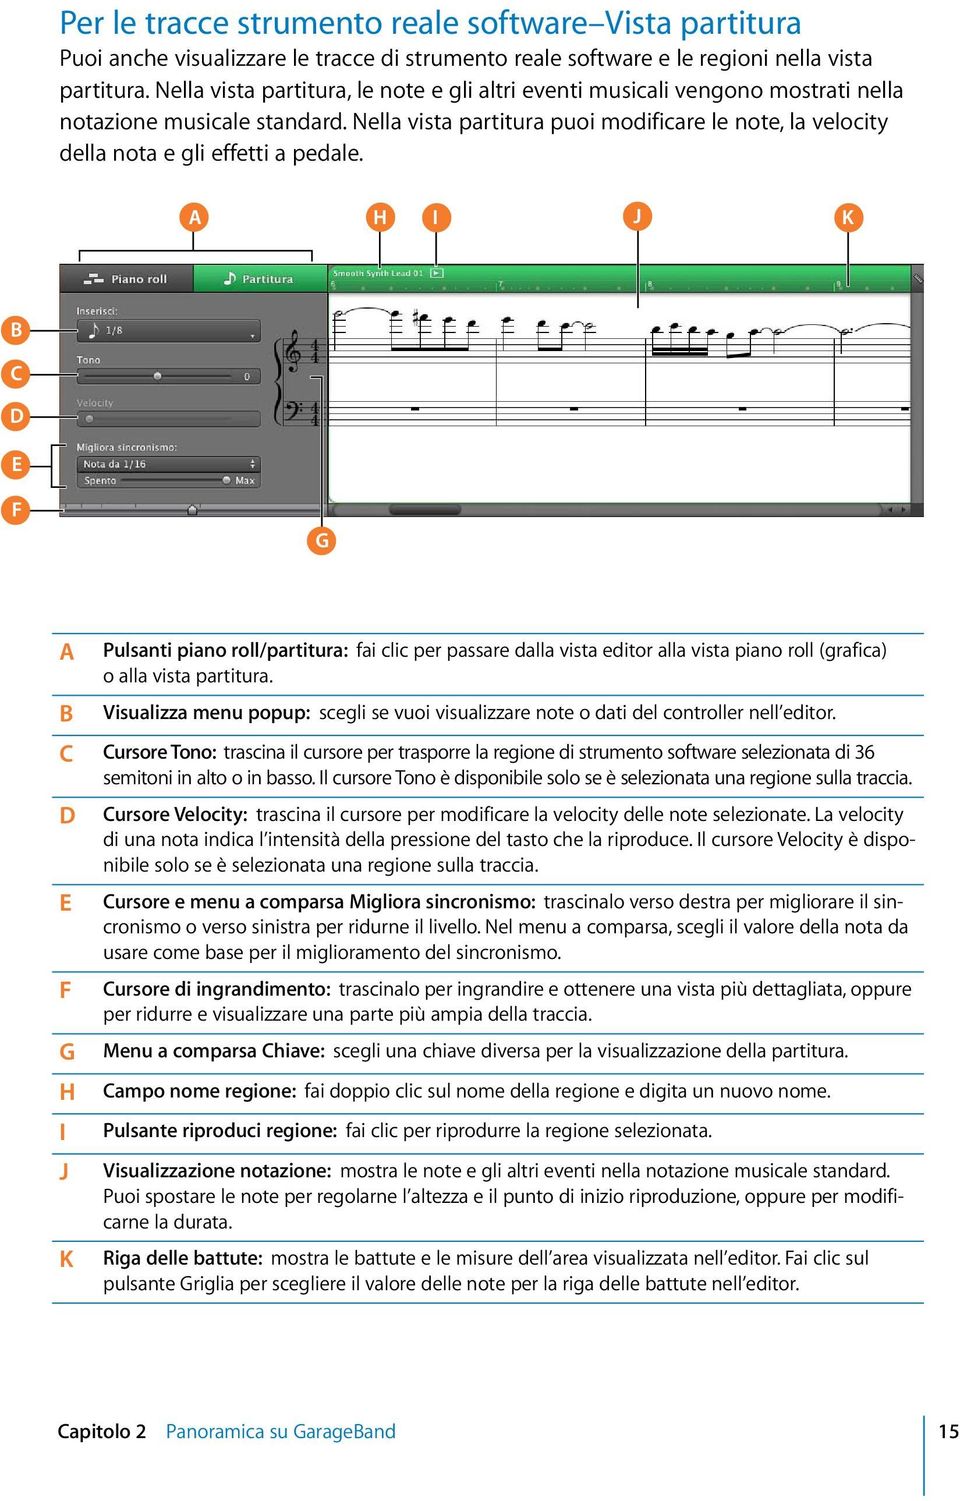 Nella vista partitura puoi modificare le note, la velocity della nota e gli effetti a pedale.